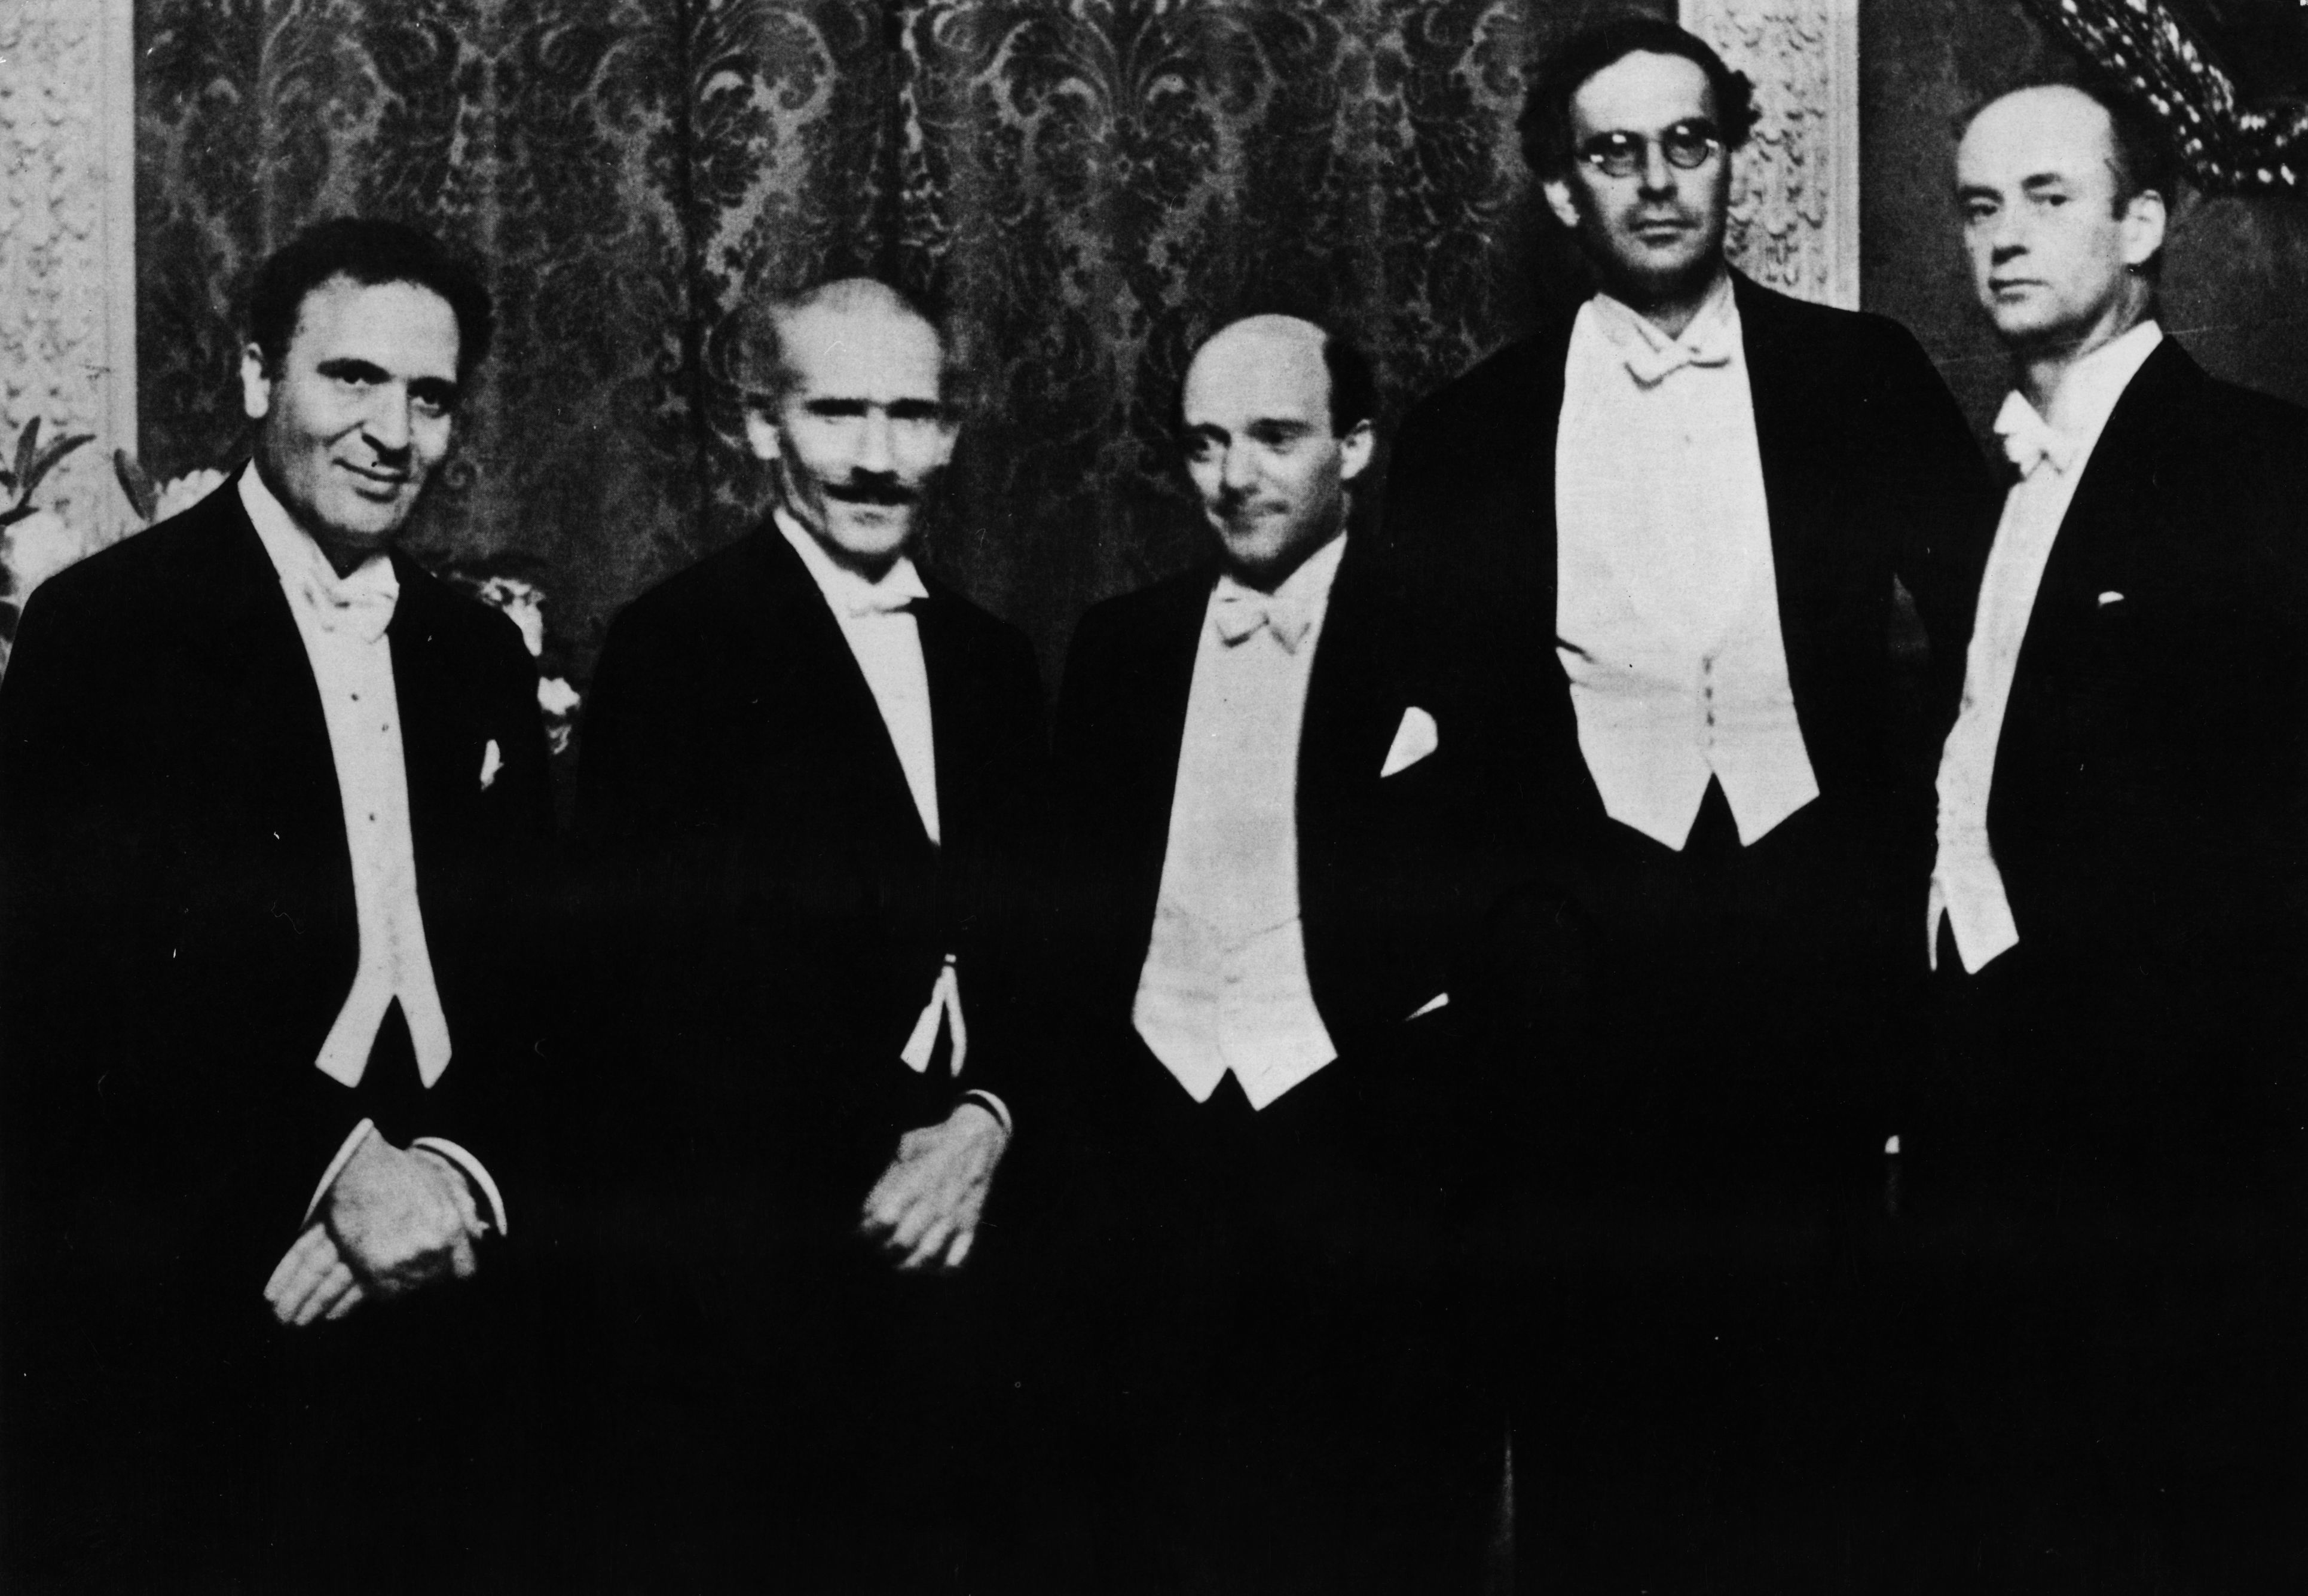 1929 circa. Cinque direttori d'orchestra di fama mondiale a Berlino a un ricevimento per Toscanini. Da sinistra a destra: Bruno Walter (1876-1962), Arturo Toscanini, Erich Kleiber (1890-1956), Otto Klemperer (1885-1973) e Wilhelm Furtwängler (1886-1954).